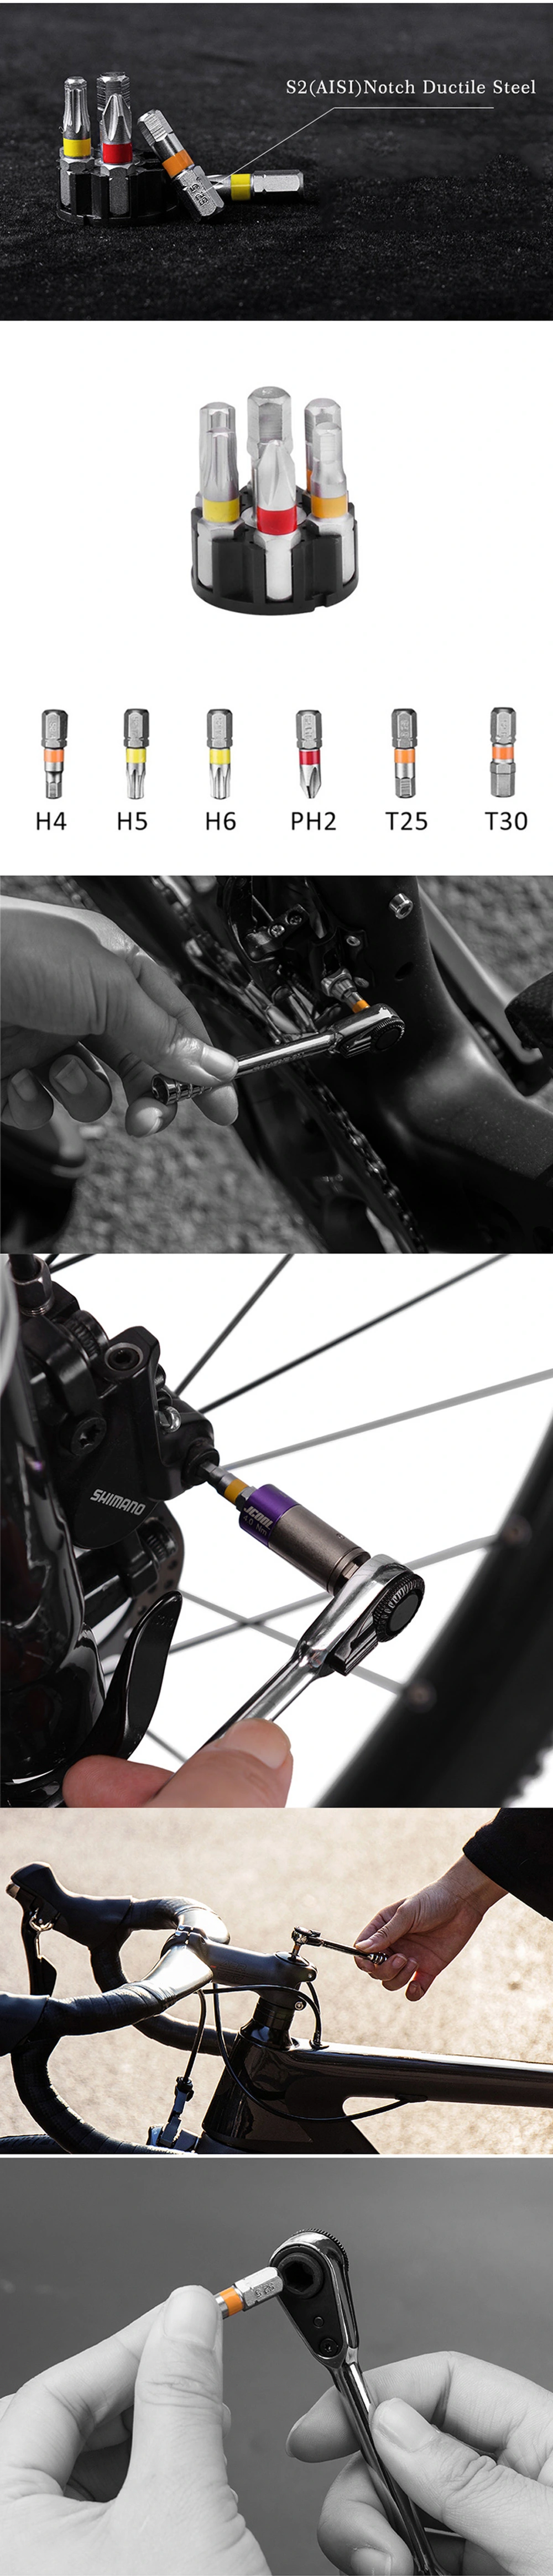 Rockbros Bicycle Toolkit Repair and Repair Mountain Bike Toolkit Made in China